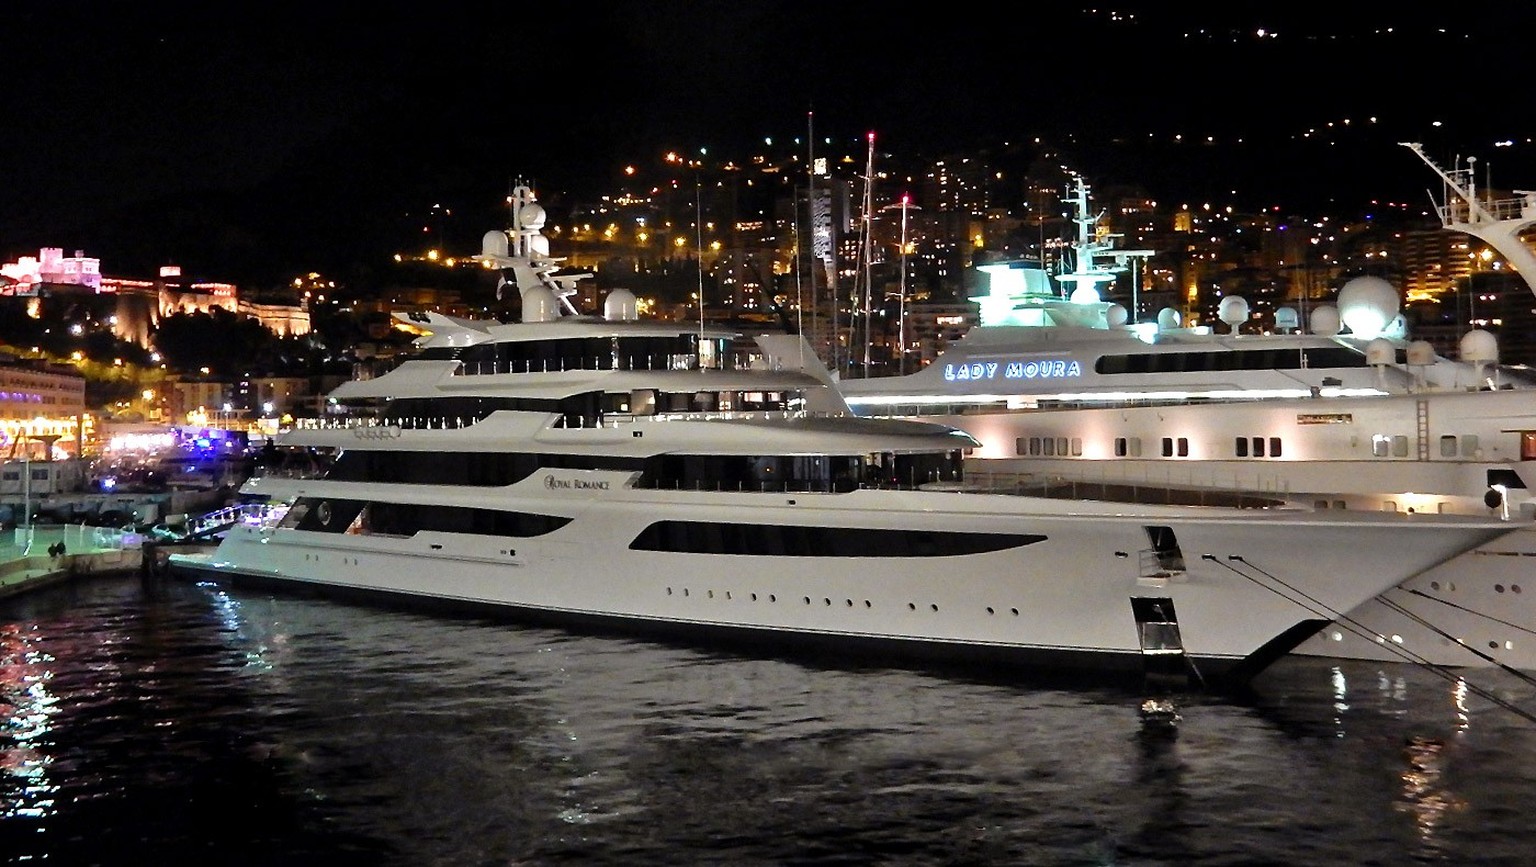 Achevé en 2014, le Royal Romance était considéré comme le «yacht le plus moderne du monde». Son prix d'achat est de 214 millions d'euros.